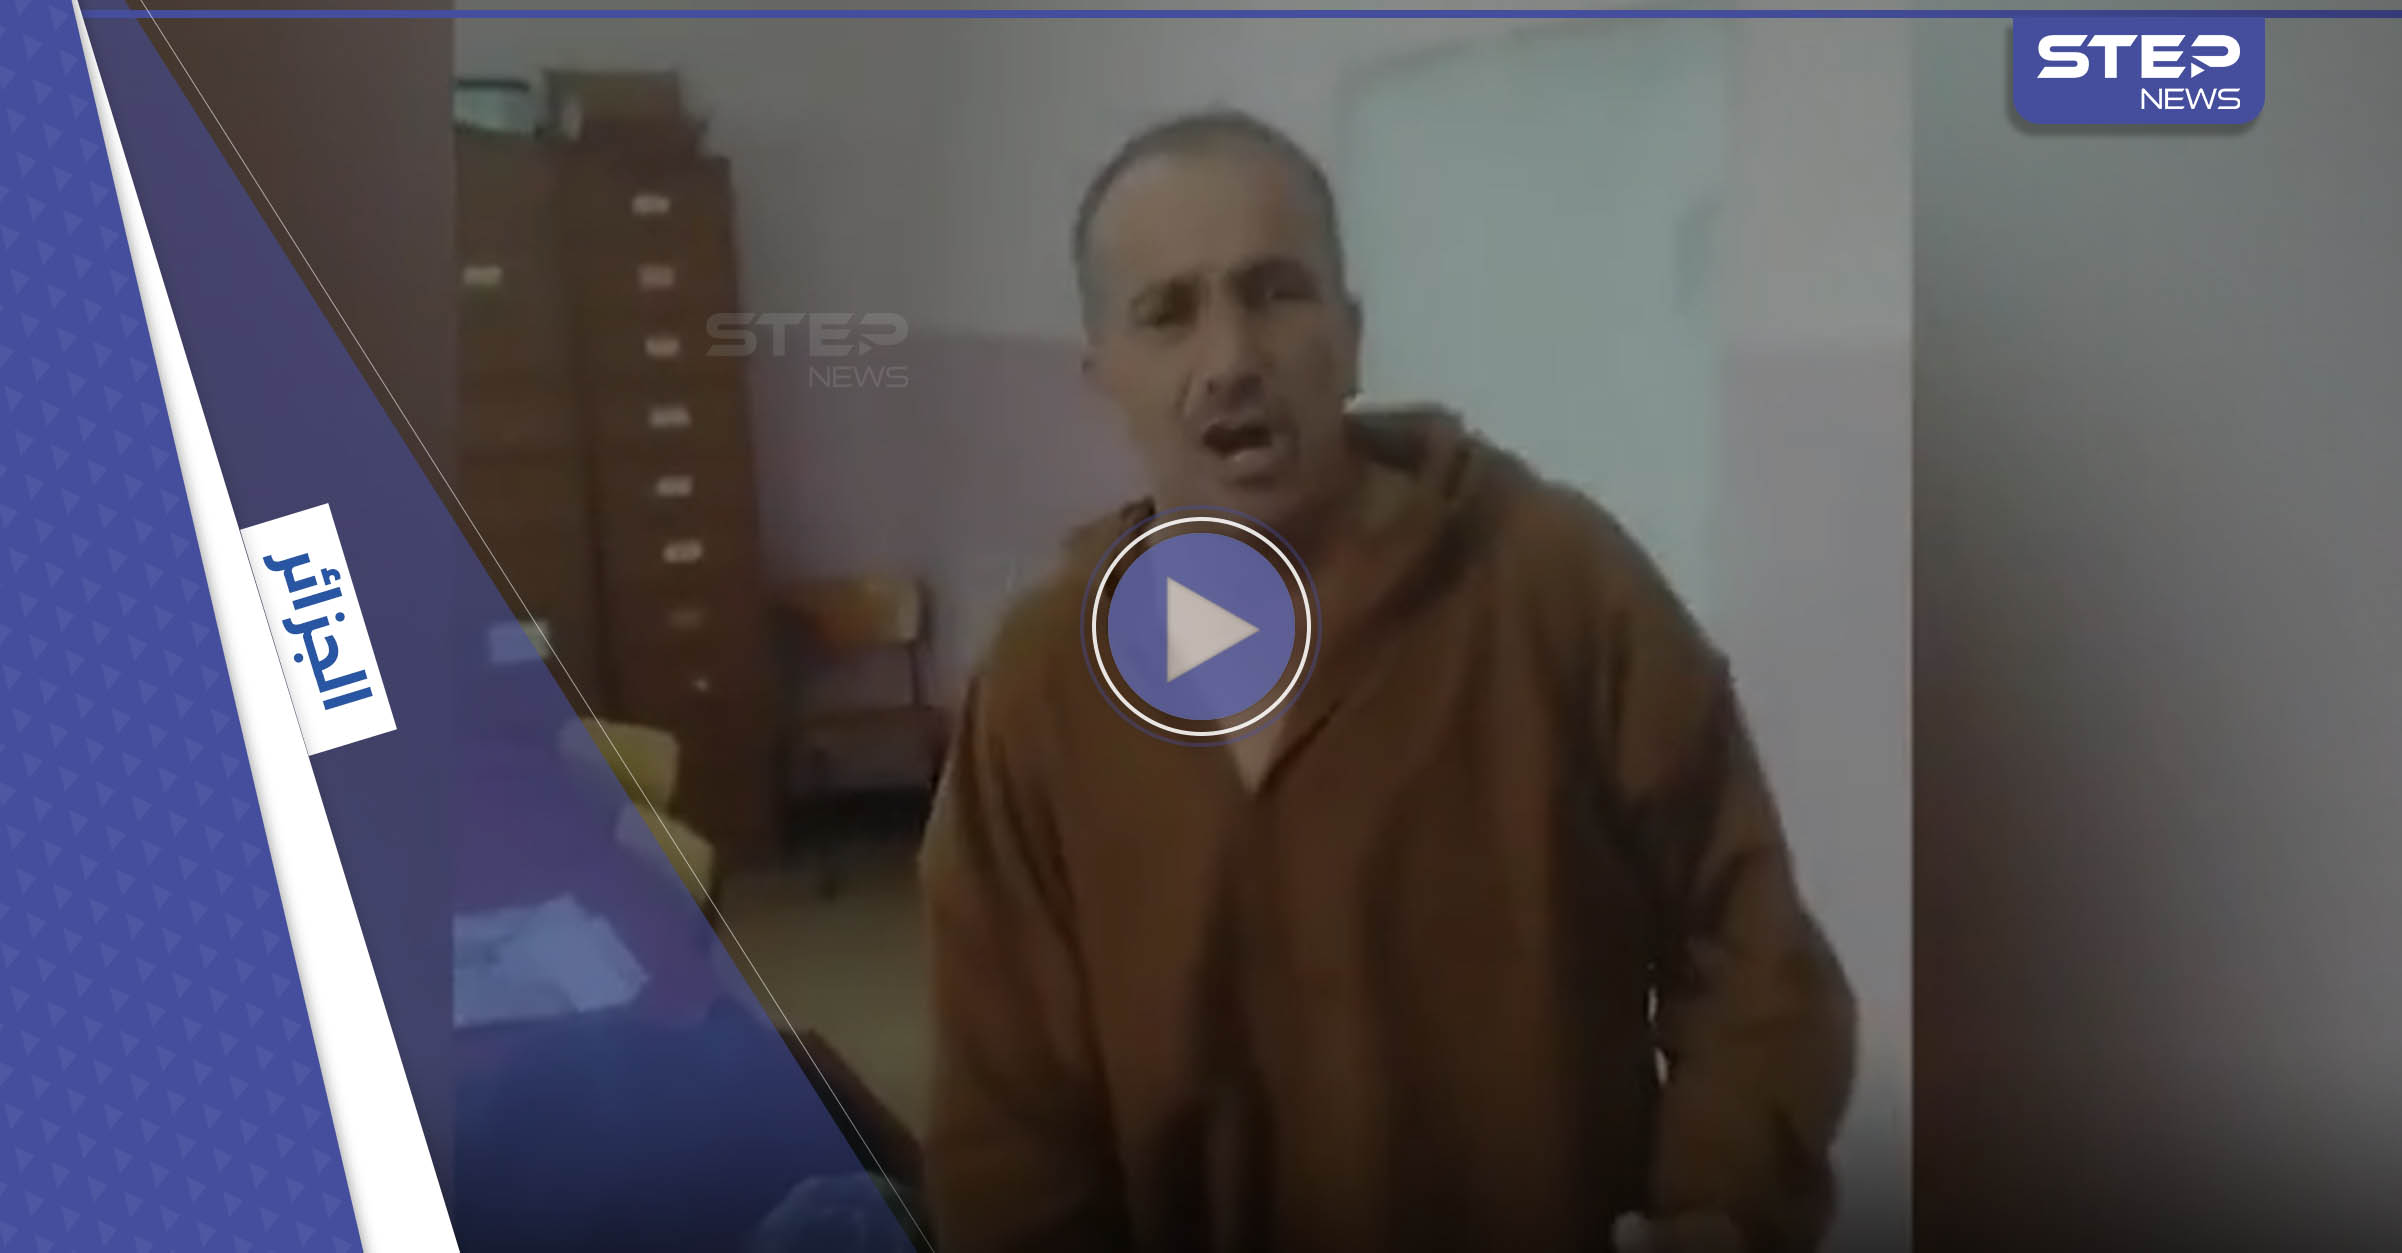 بالفيديو|| مسؤول جزائري يثير الجدل بعد خلع ملابسه في مكانٍ عام والقيام بتصرفات غريبة